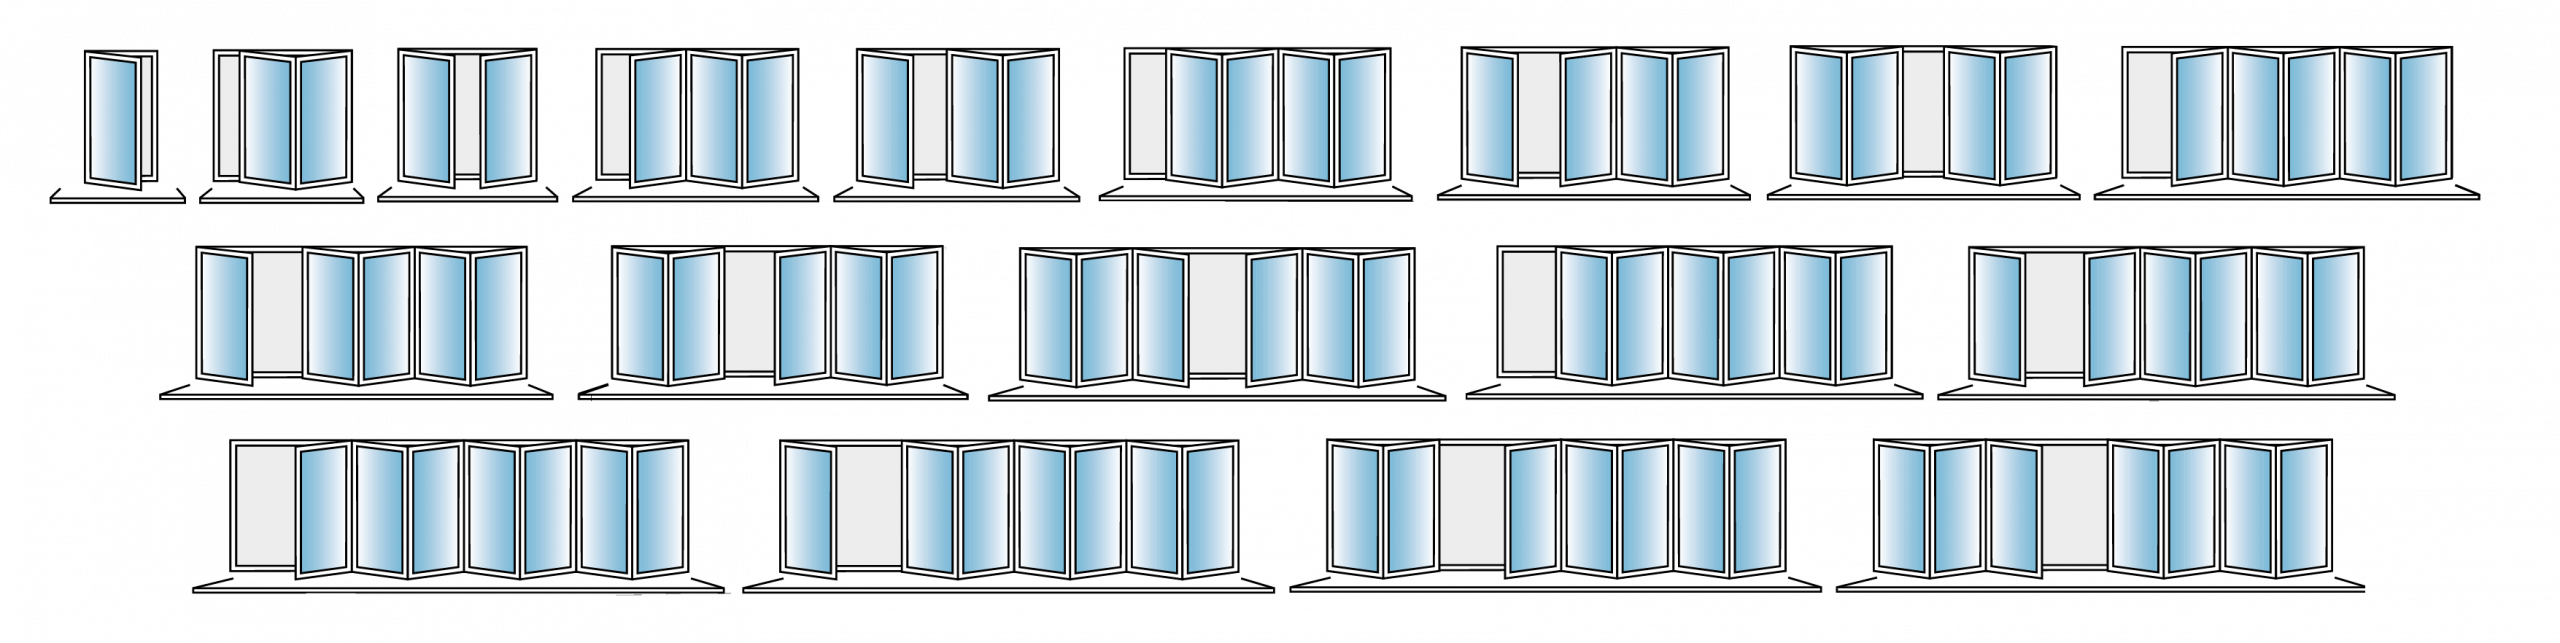 Bifold Doors Configuration